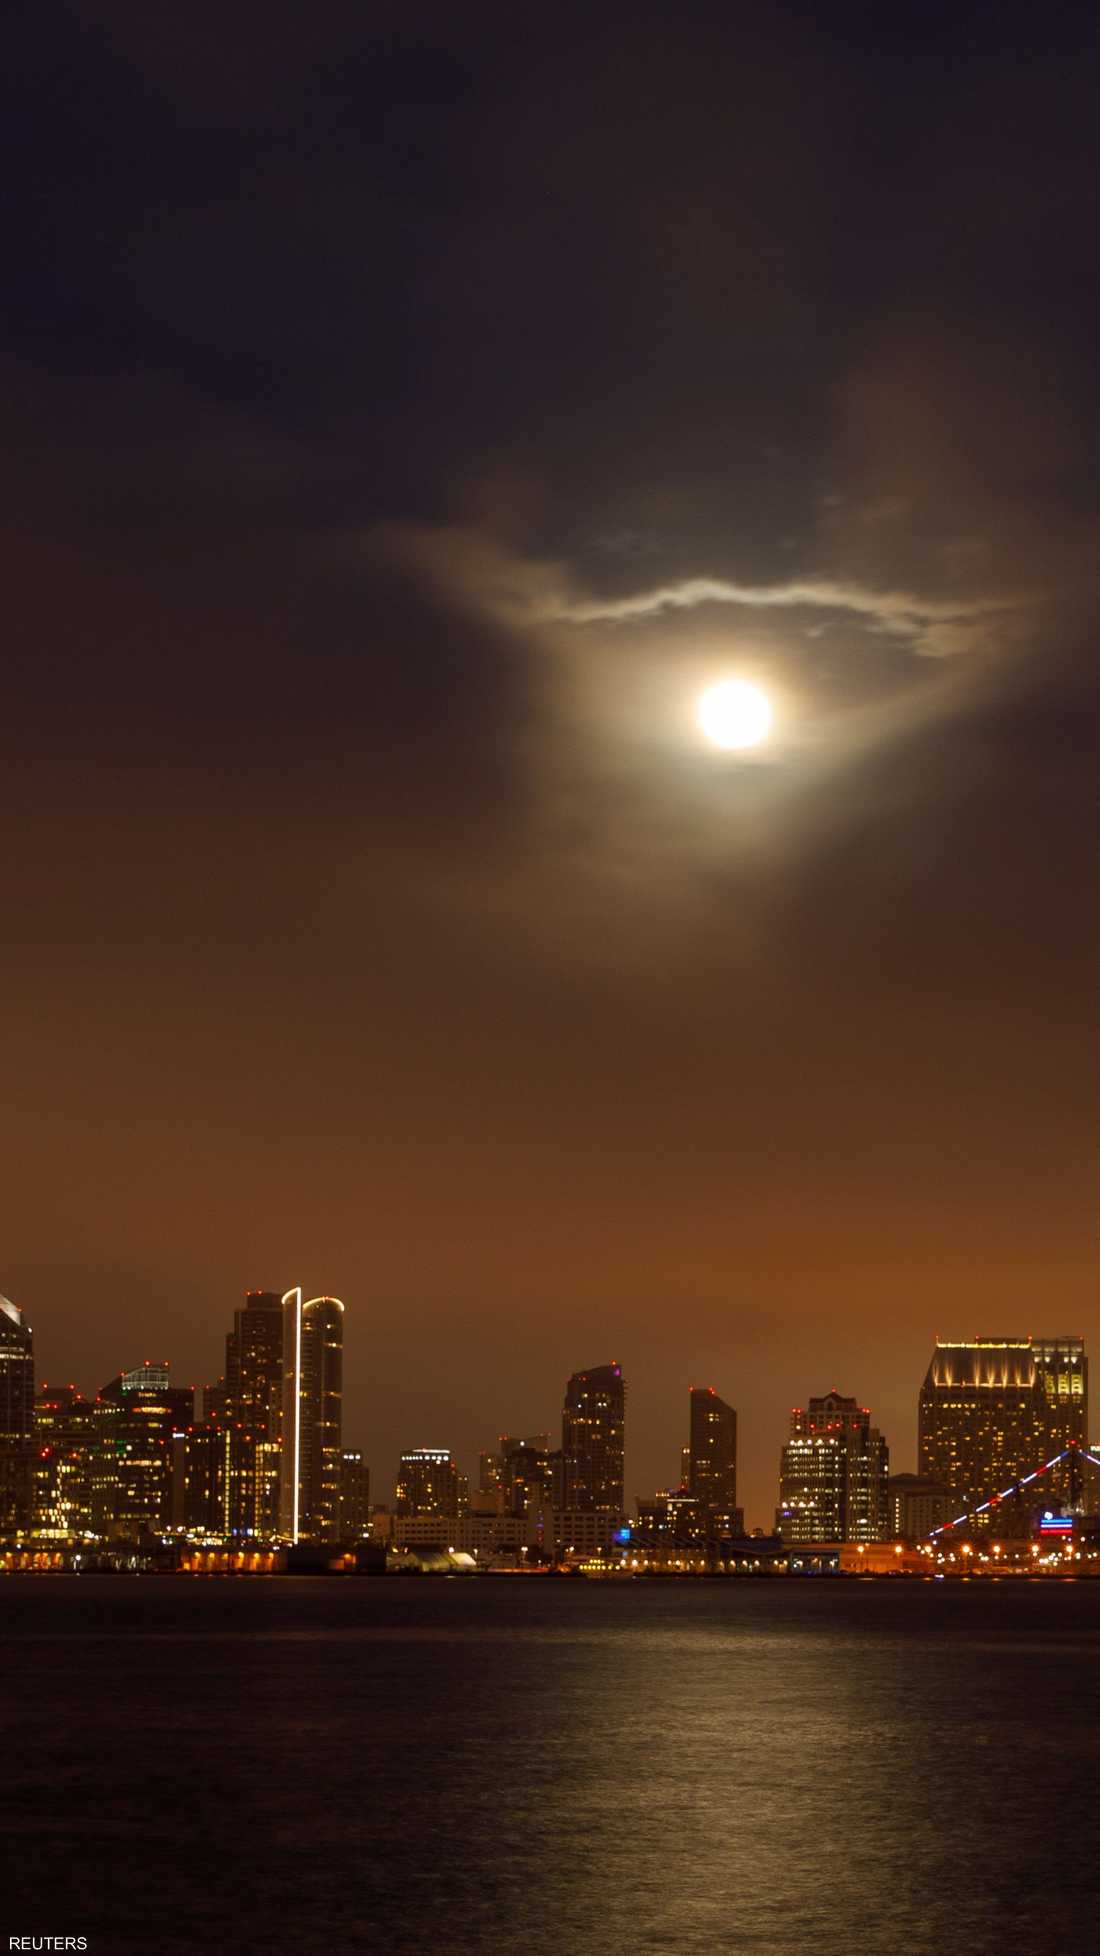 القمر العملاق ينير مدينة سان دييغو الأميركية